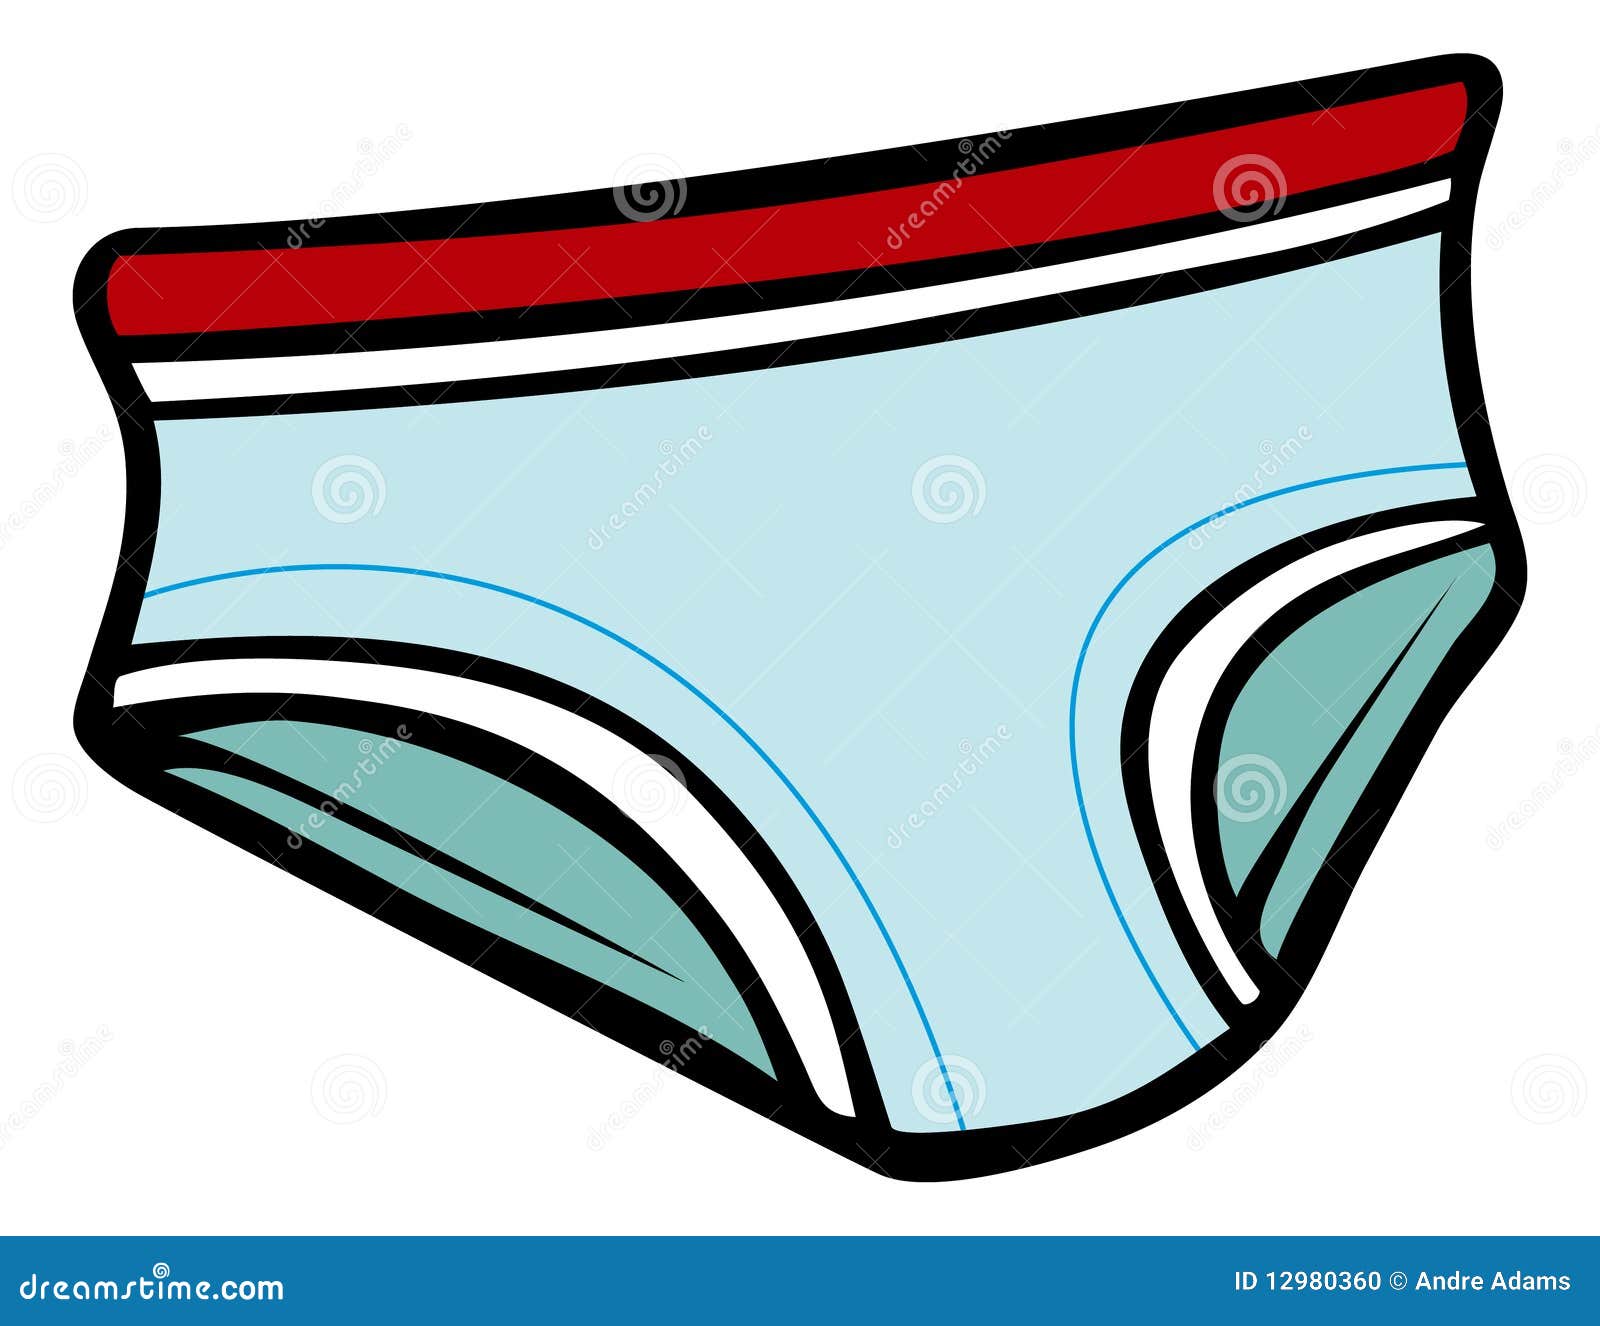 clipart underwear - photo #4